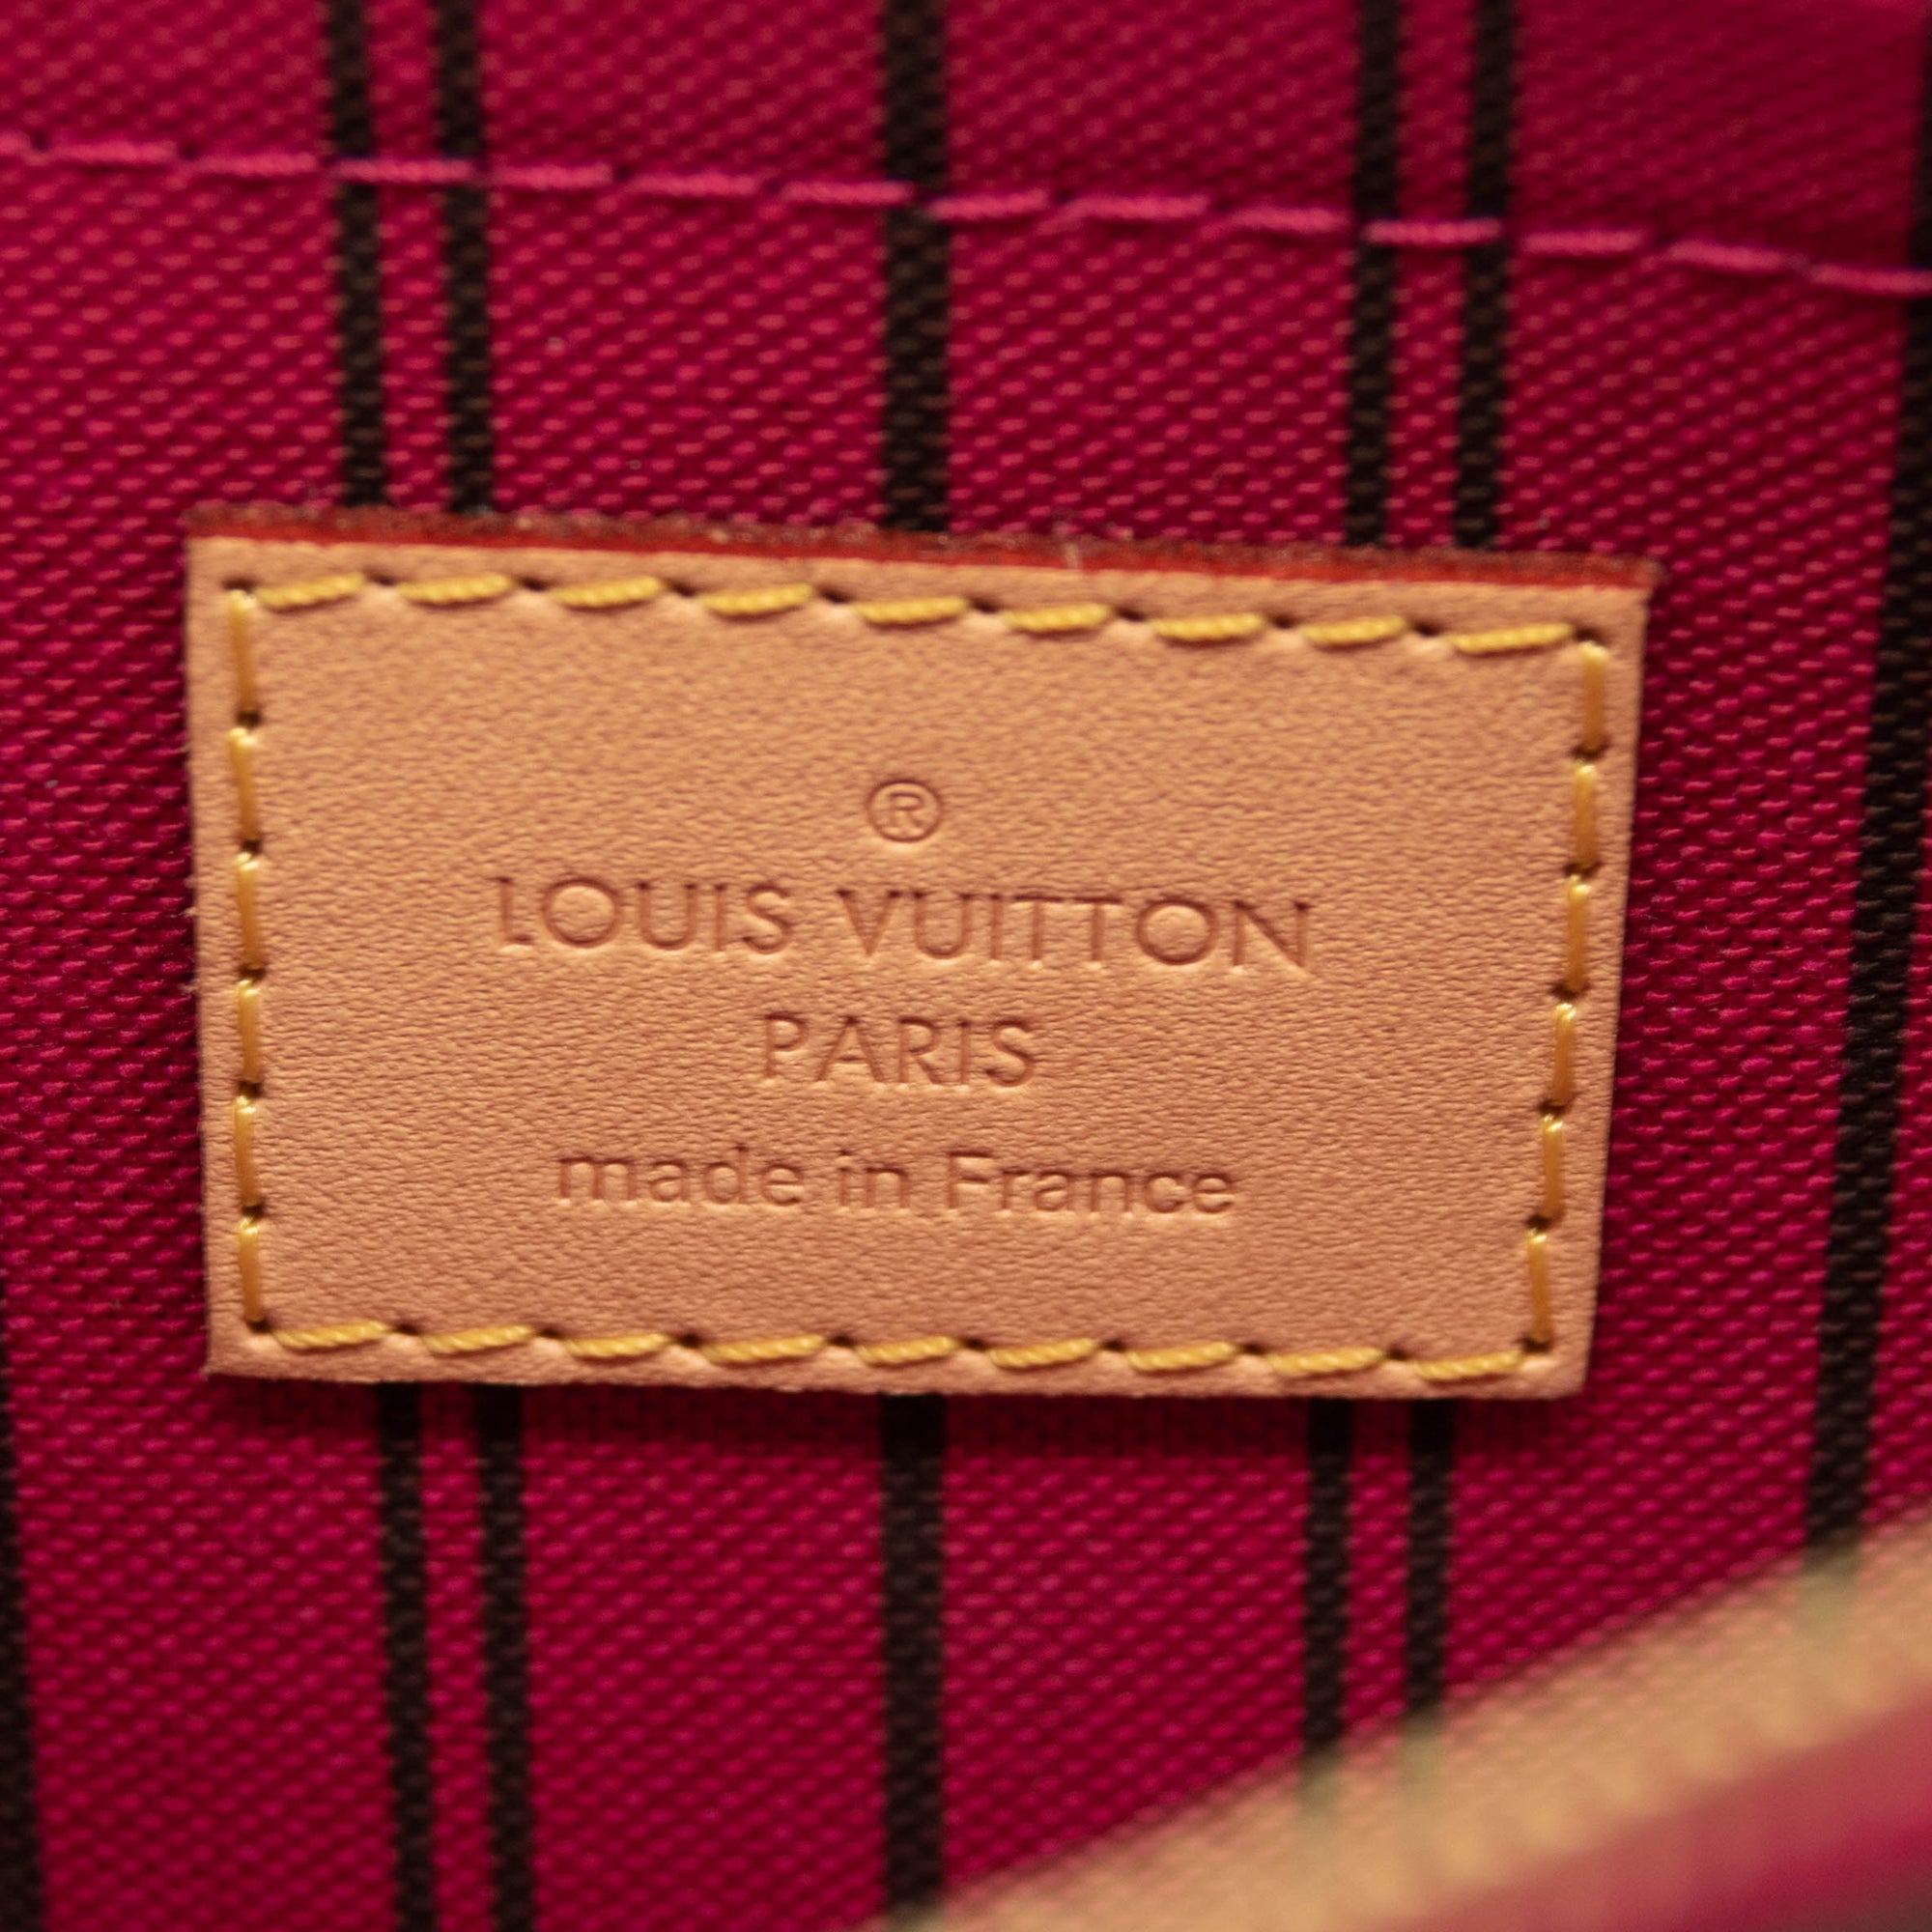 Louis Vuitton Neverfull Pochette Mm Gm White Damier Azur Canvas Wristl -  MyDesignerly